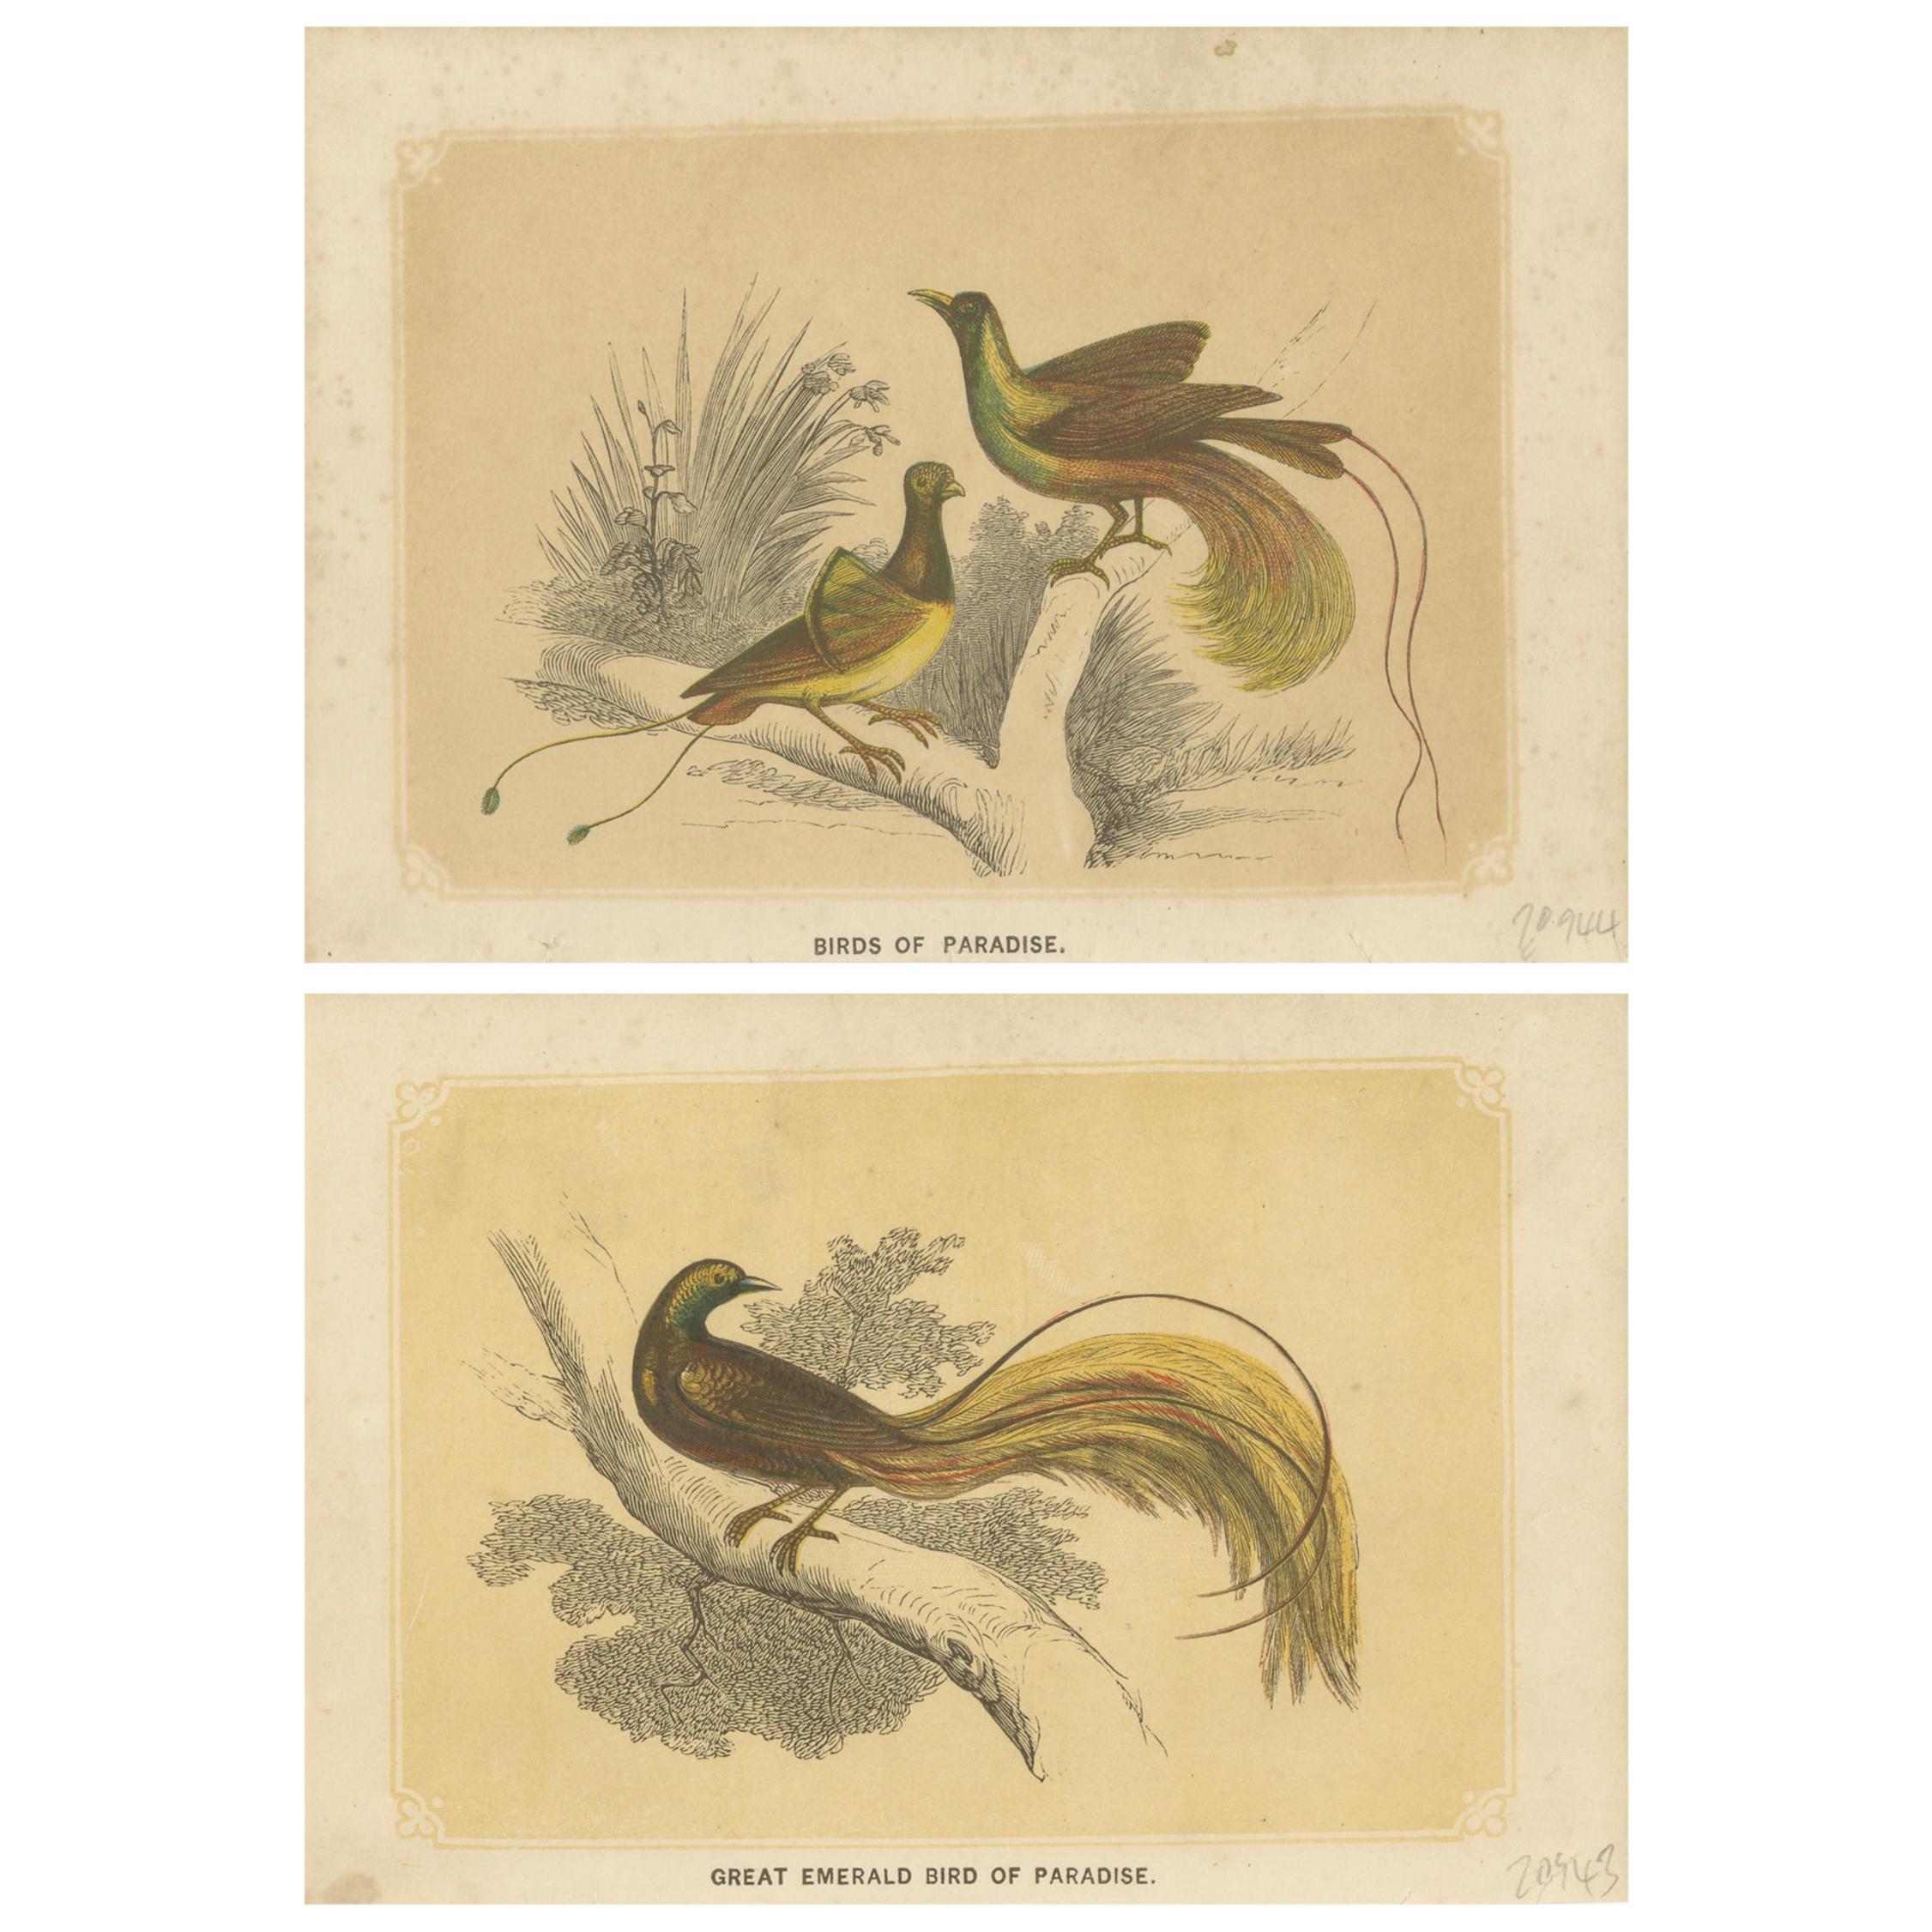 Ensemble de 2 estampes anciennes d'oiseaux, Bird of Paradise, de Bicknell, datant d'environ 1855